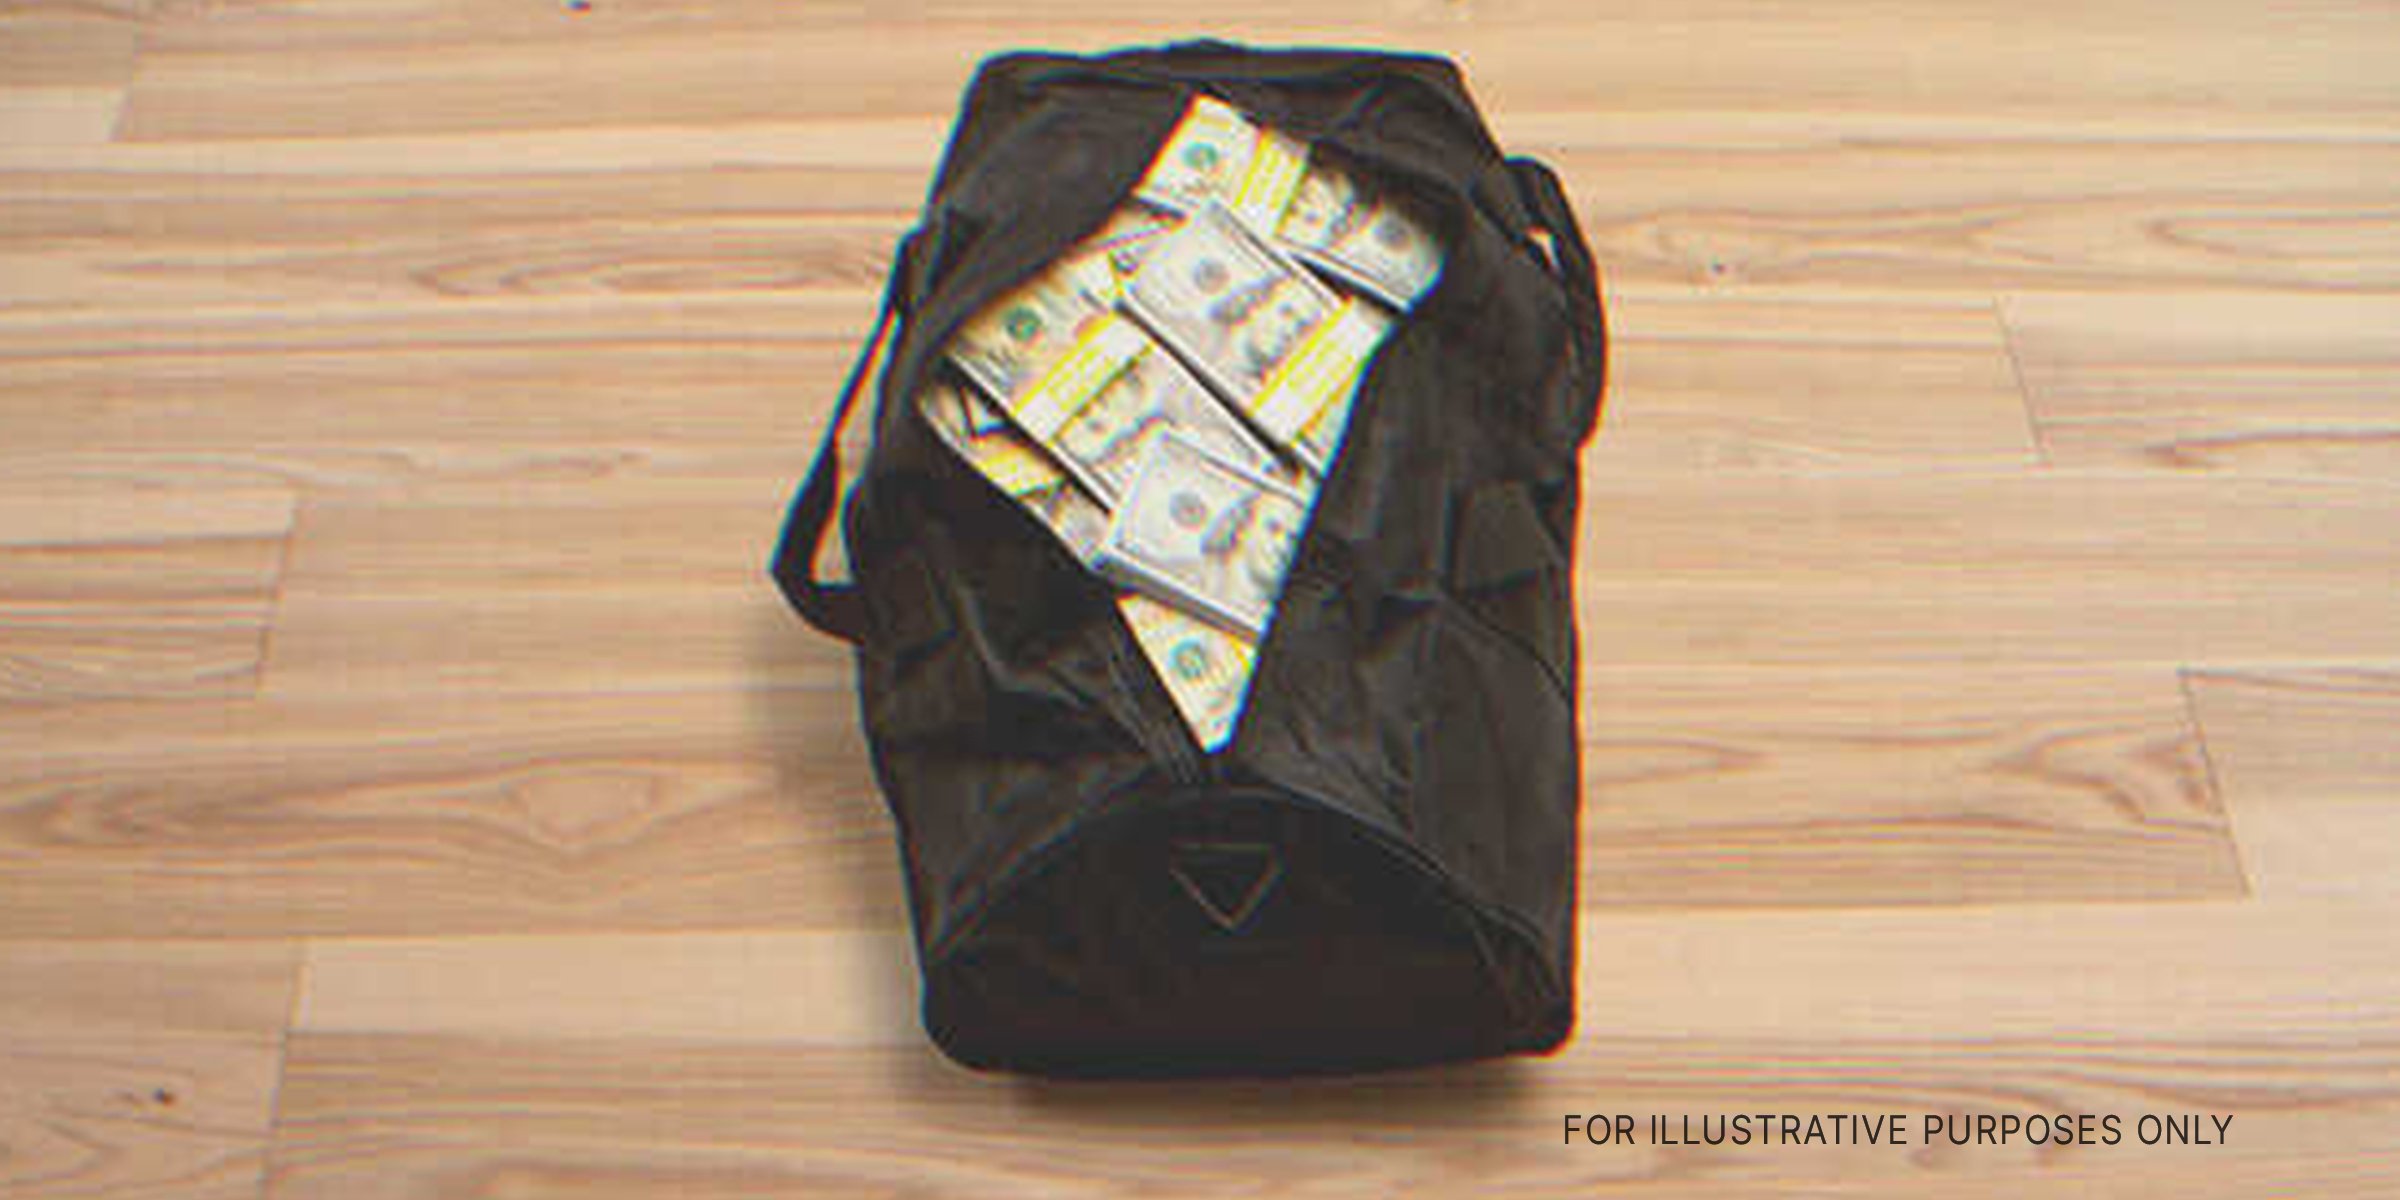 A bag of money | Source: Shutterstock